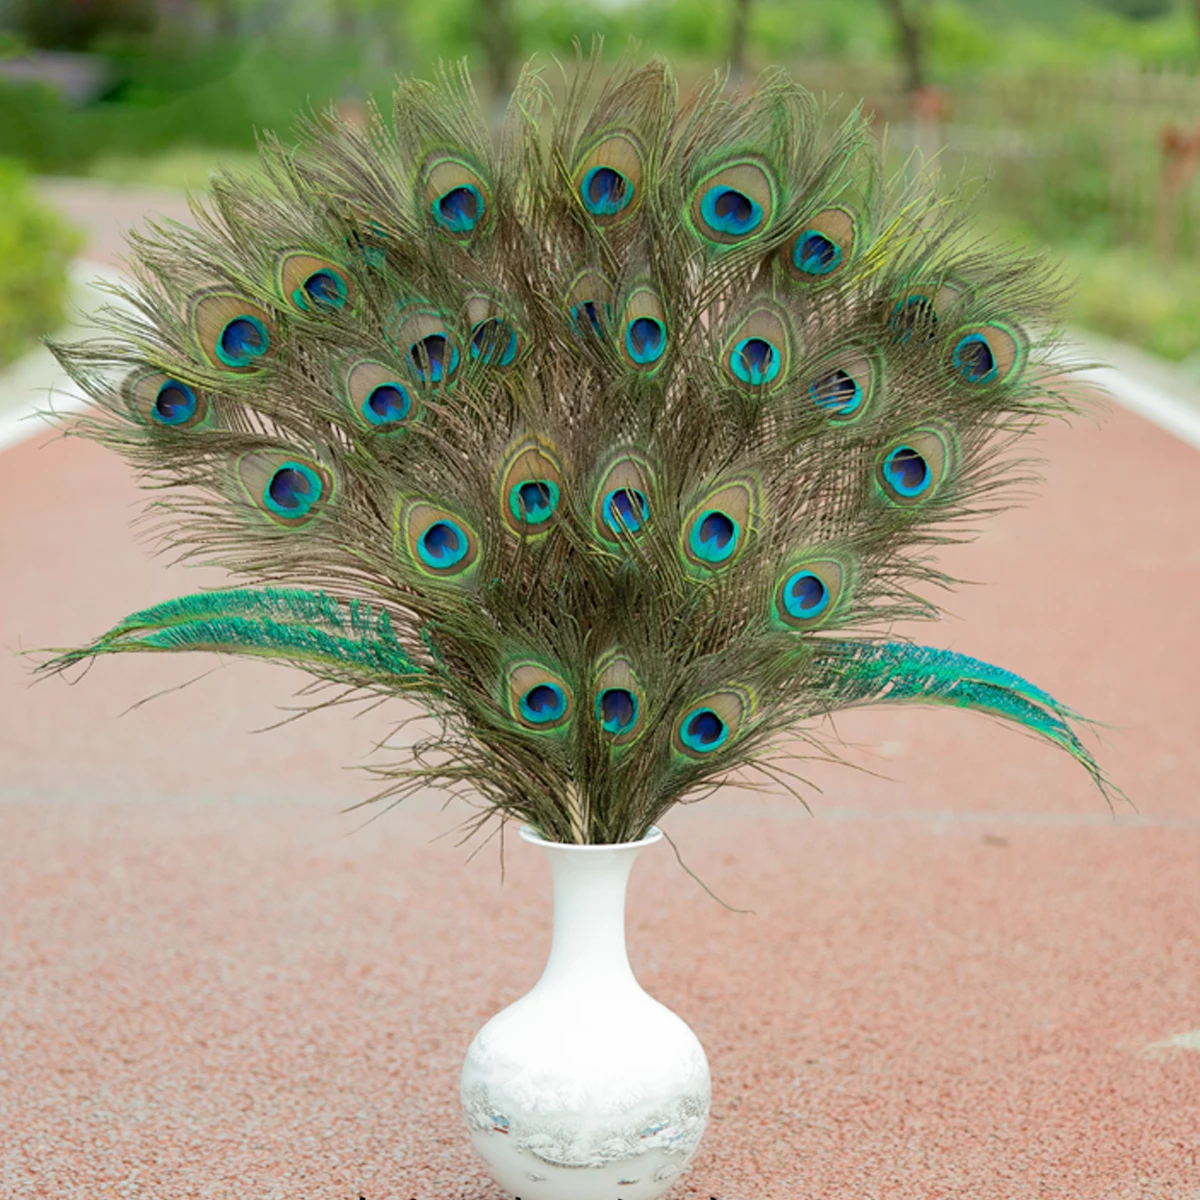 40 шт. красивые натуральные перья павлина Глаза для DIY украшения из ткани Свадебная вечеринка хвостовые перья павлина